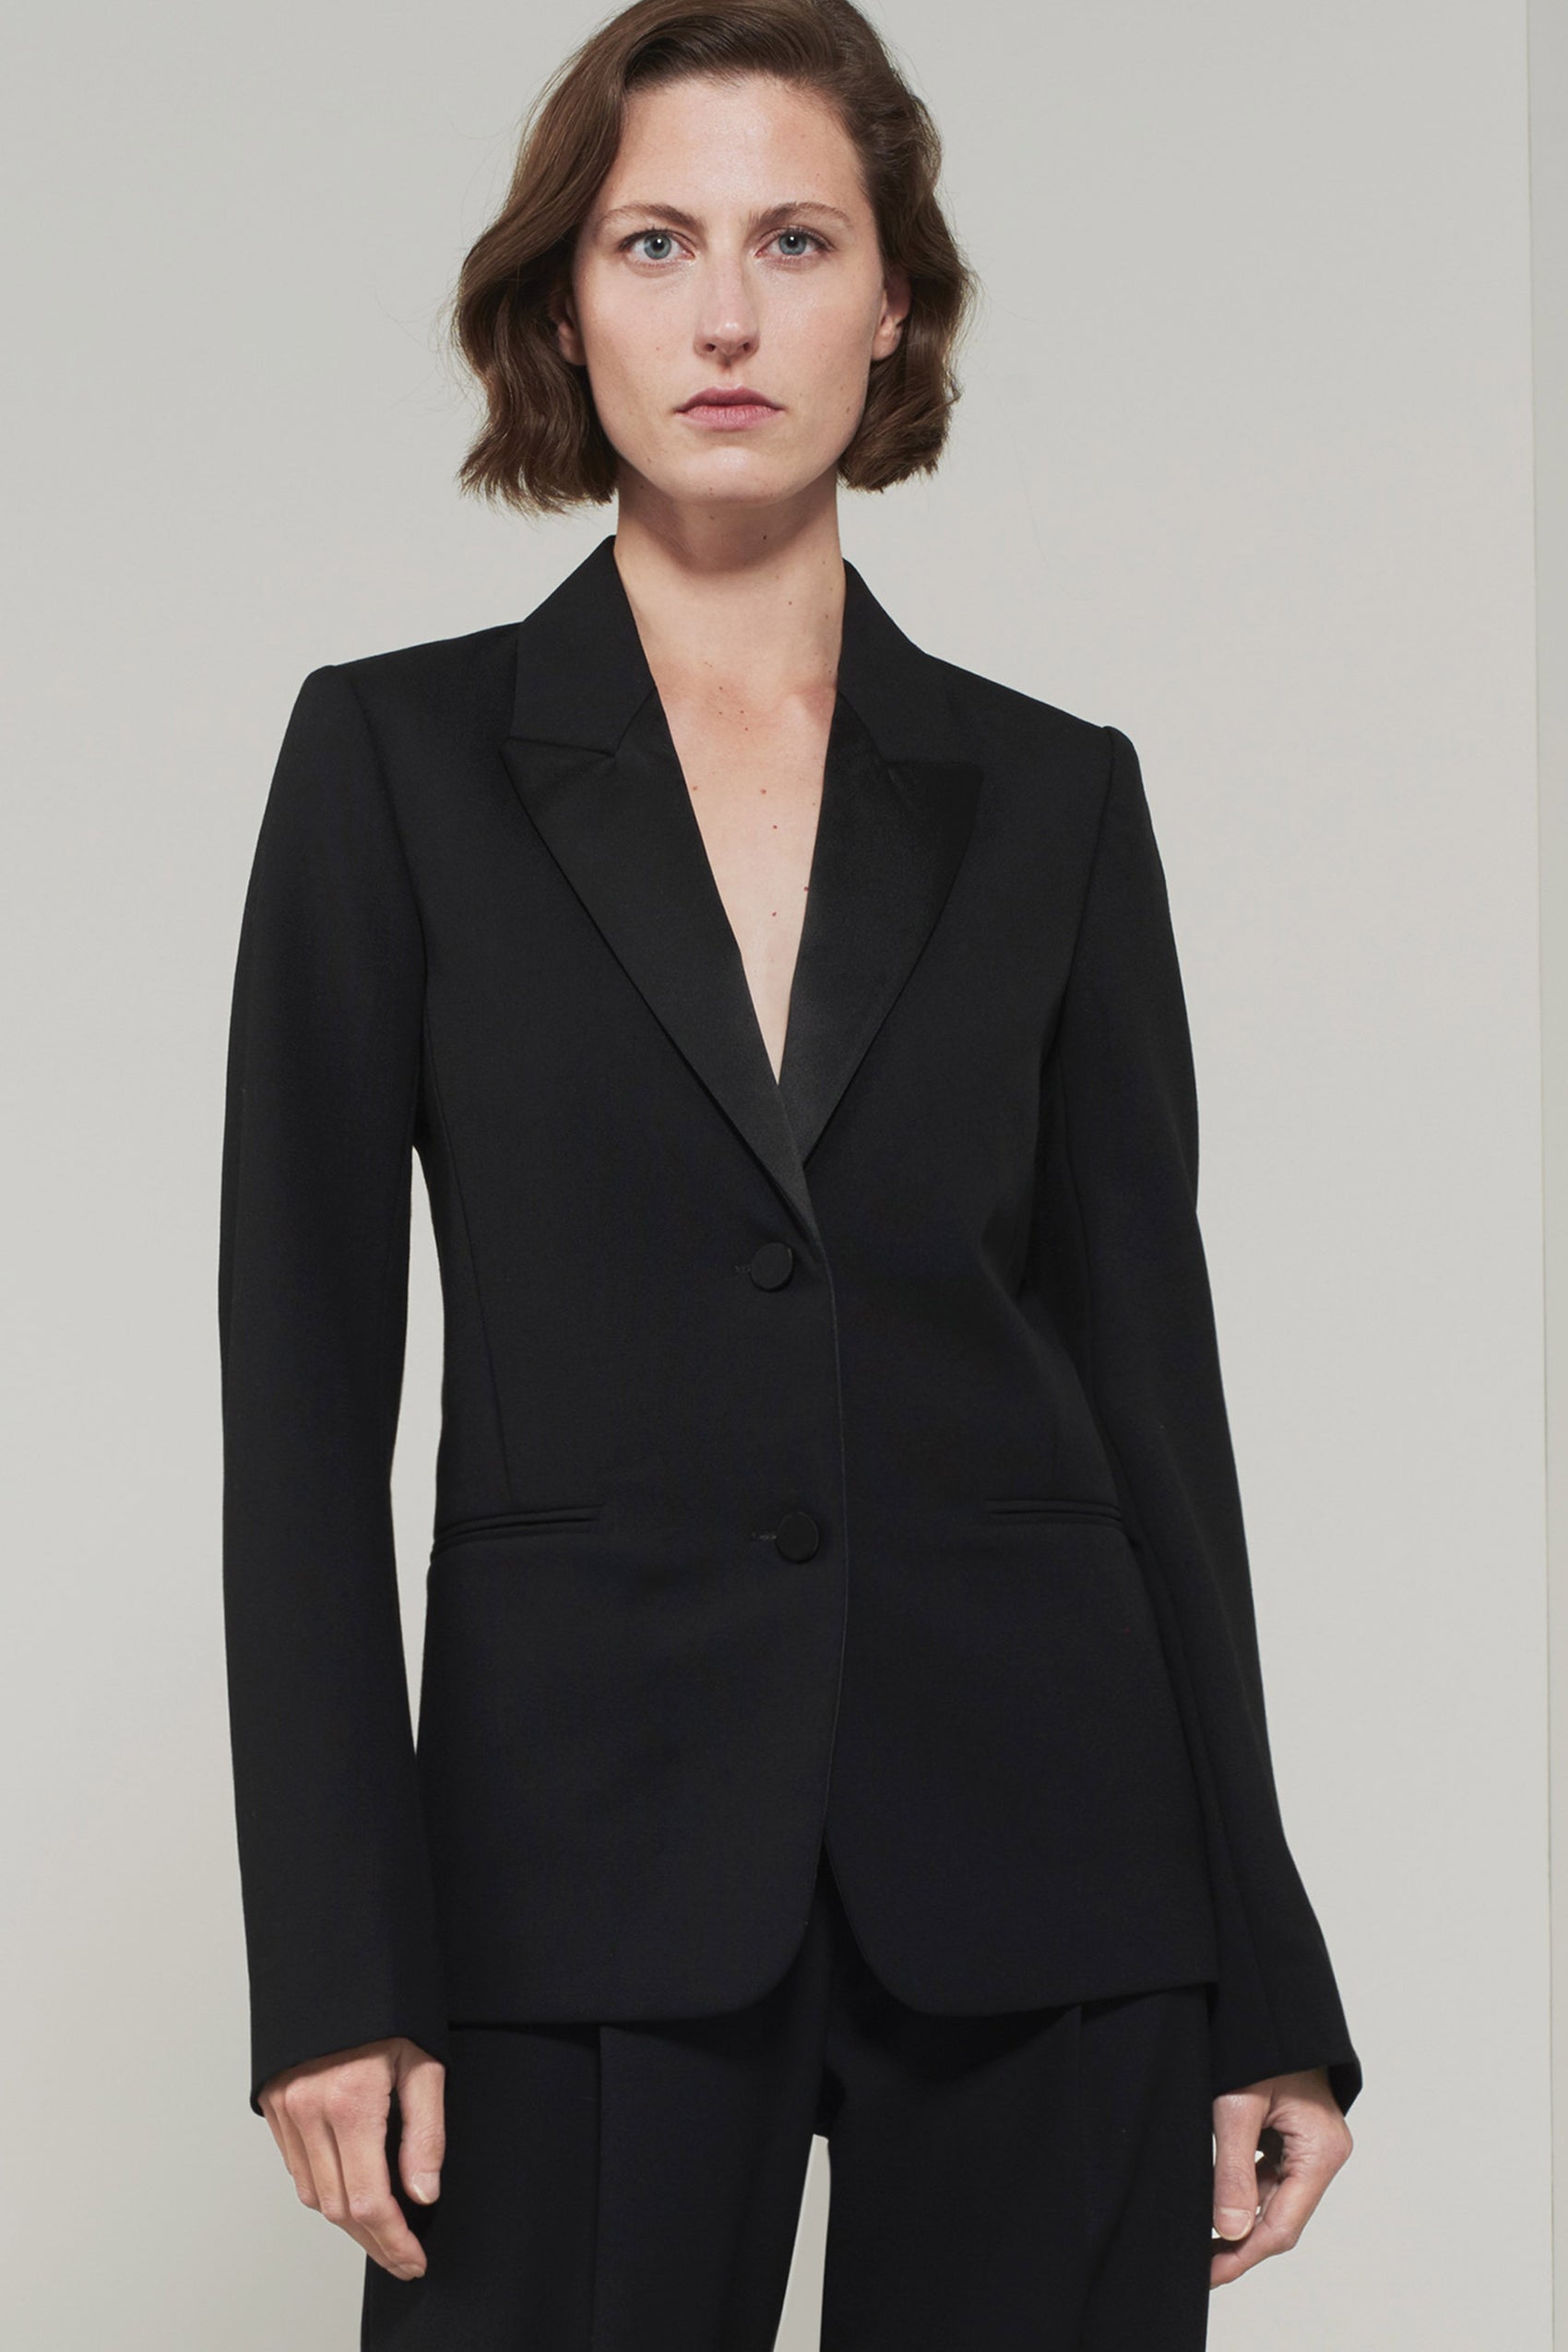 Women's Ready-to-Wear | Shop Victoria Beckham now